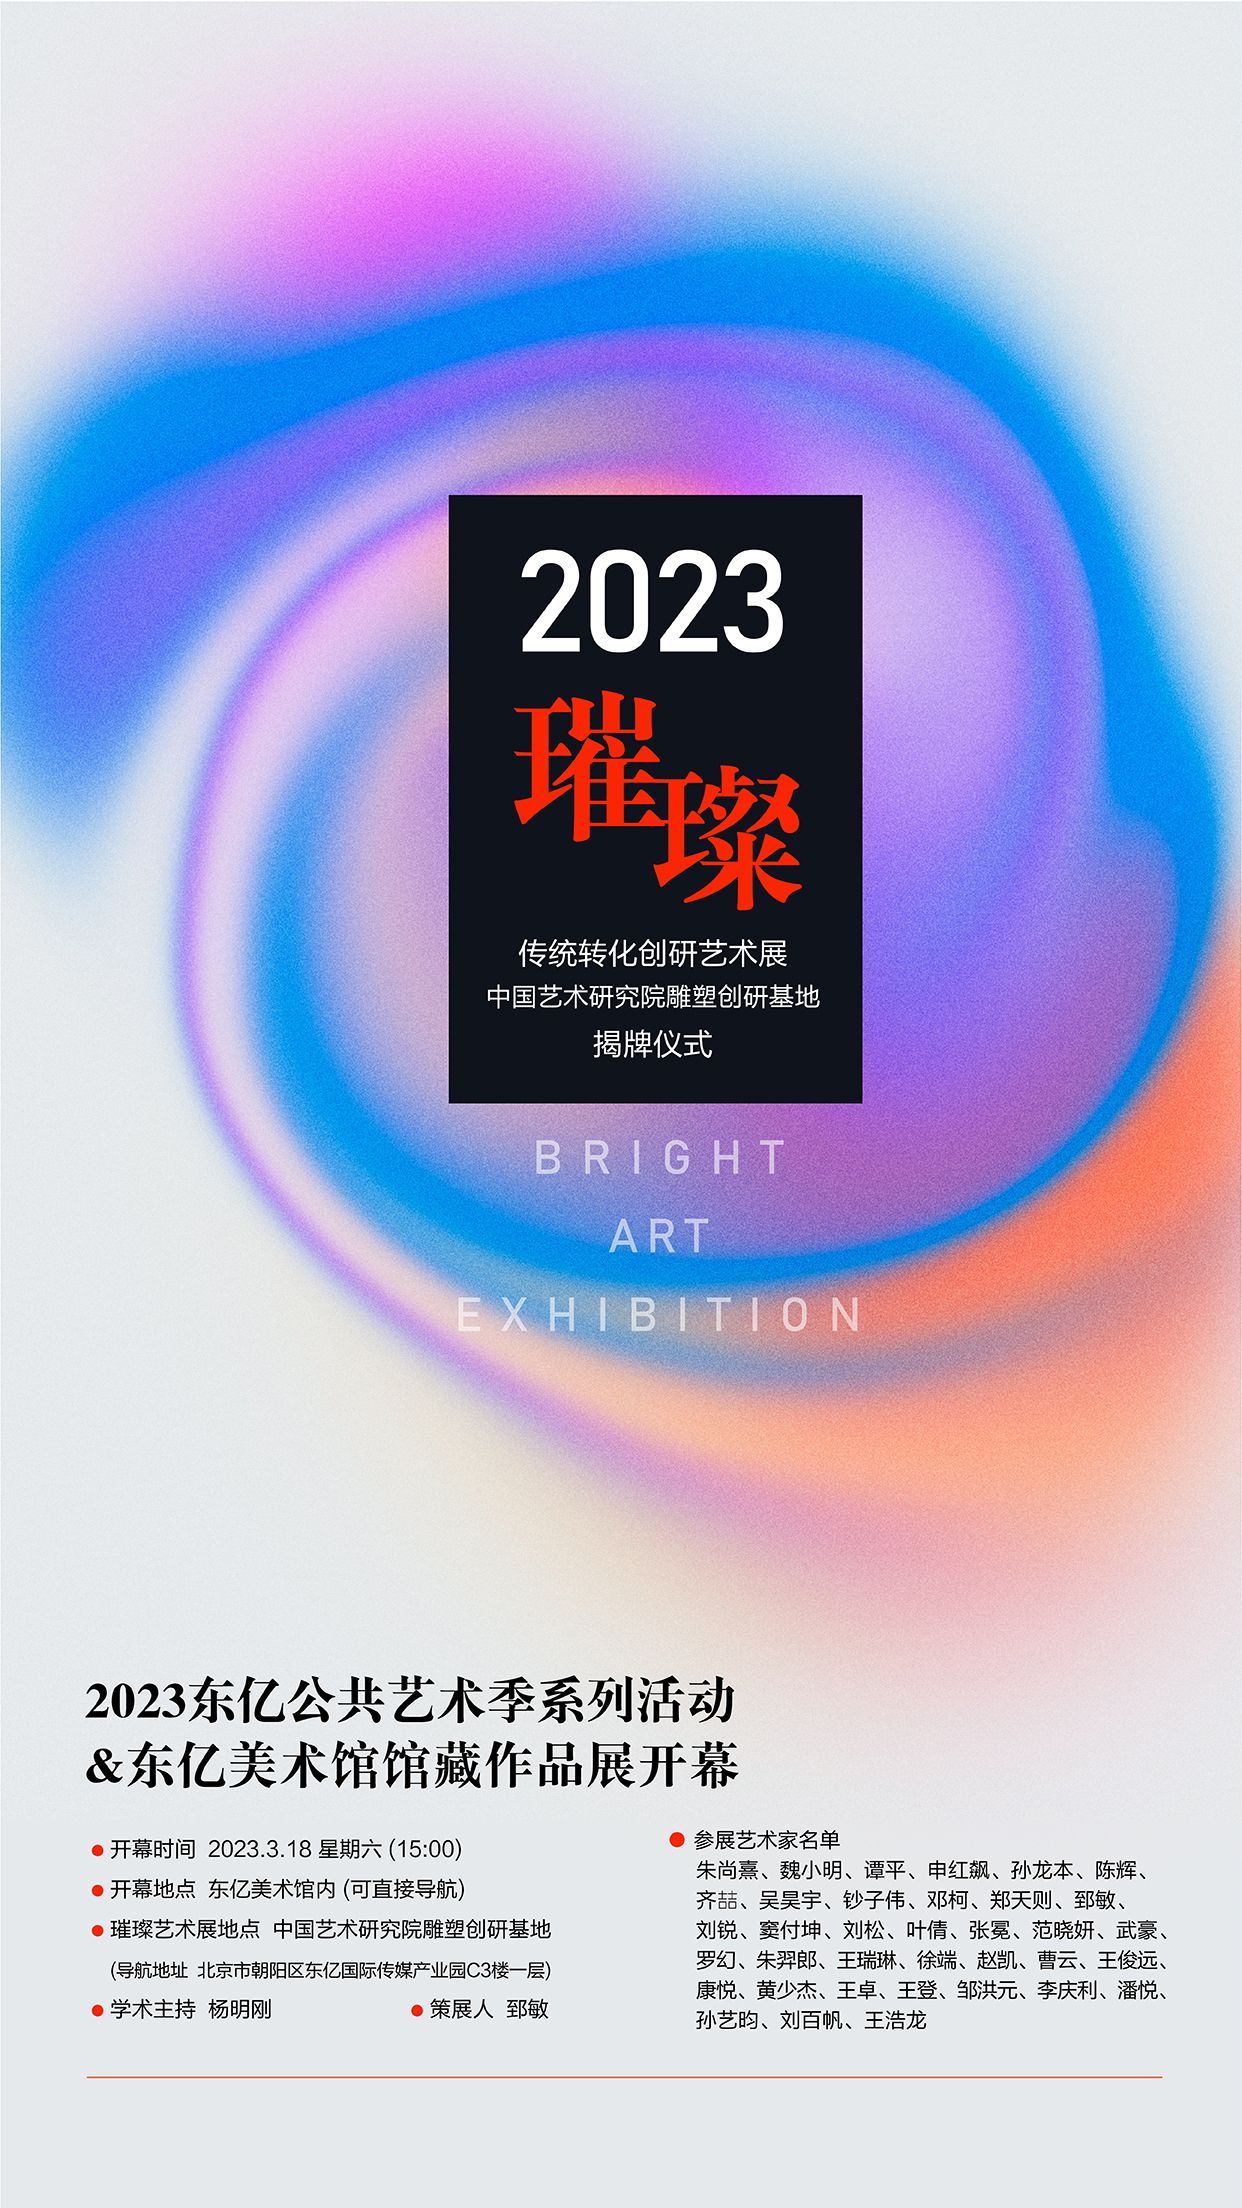 2023璀璨传统转化创研艺术展